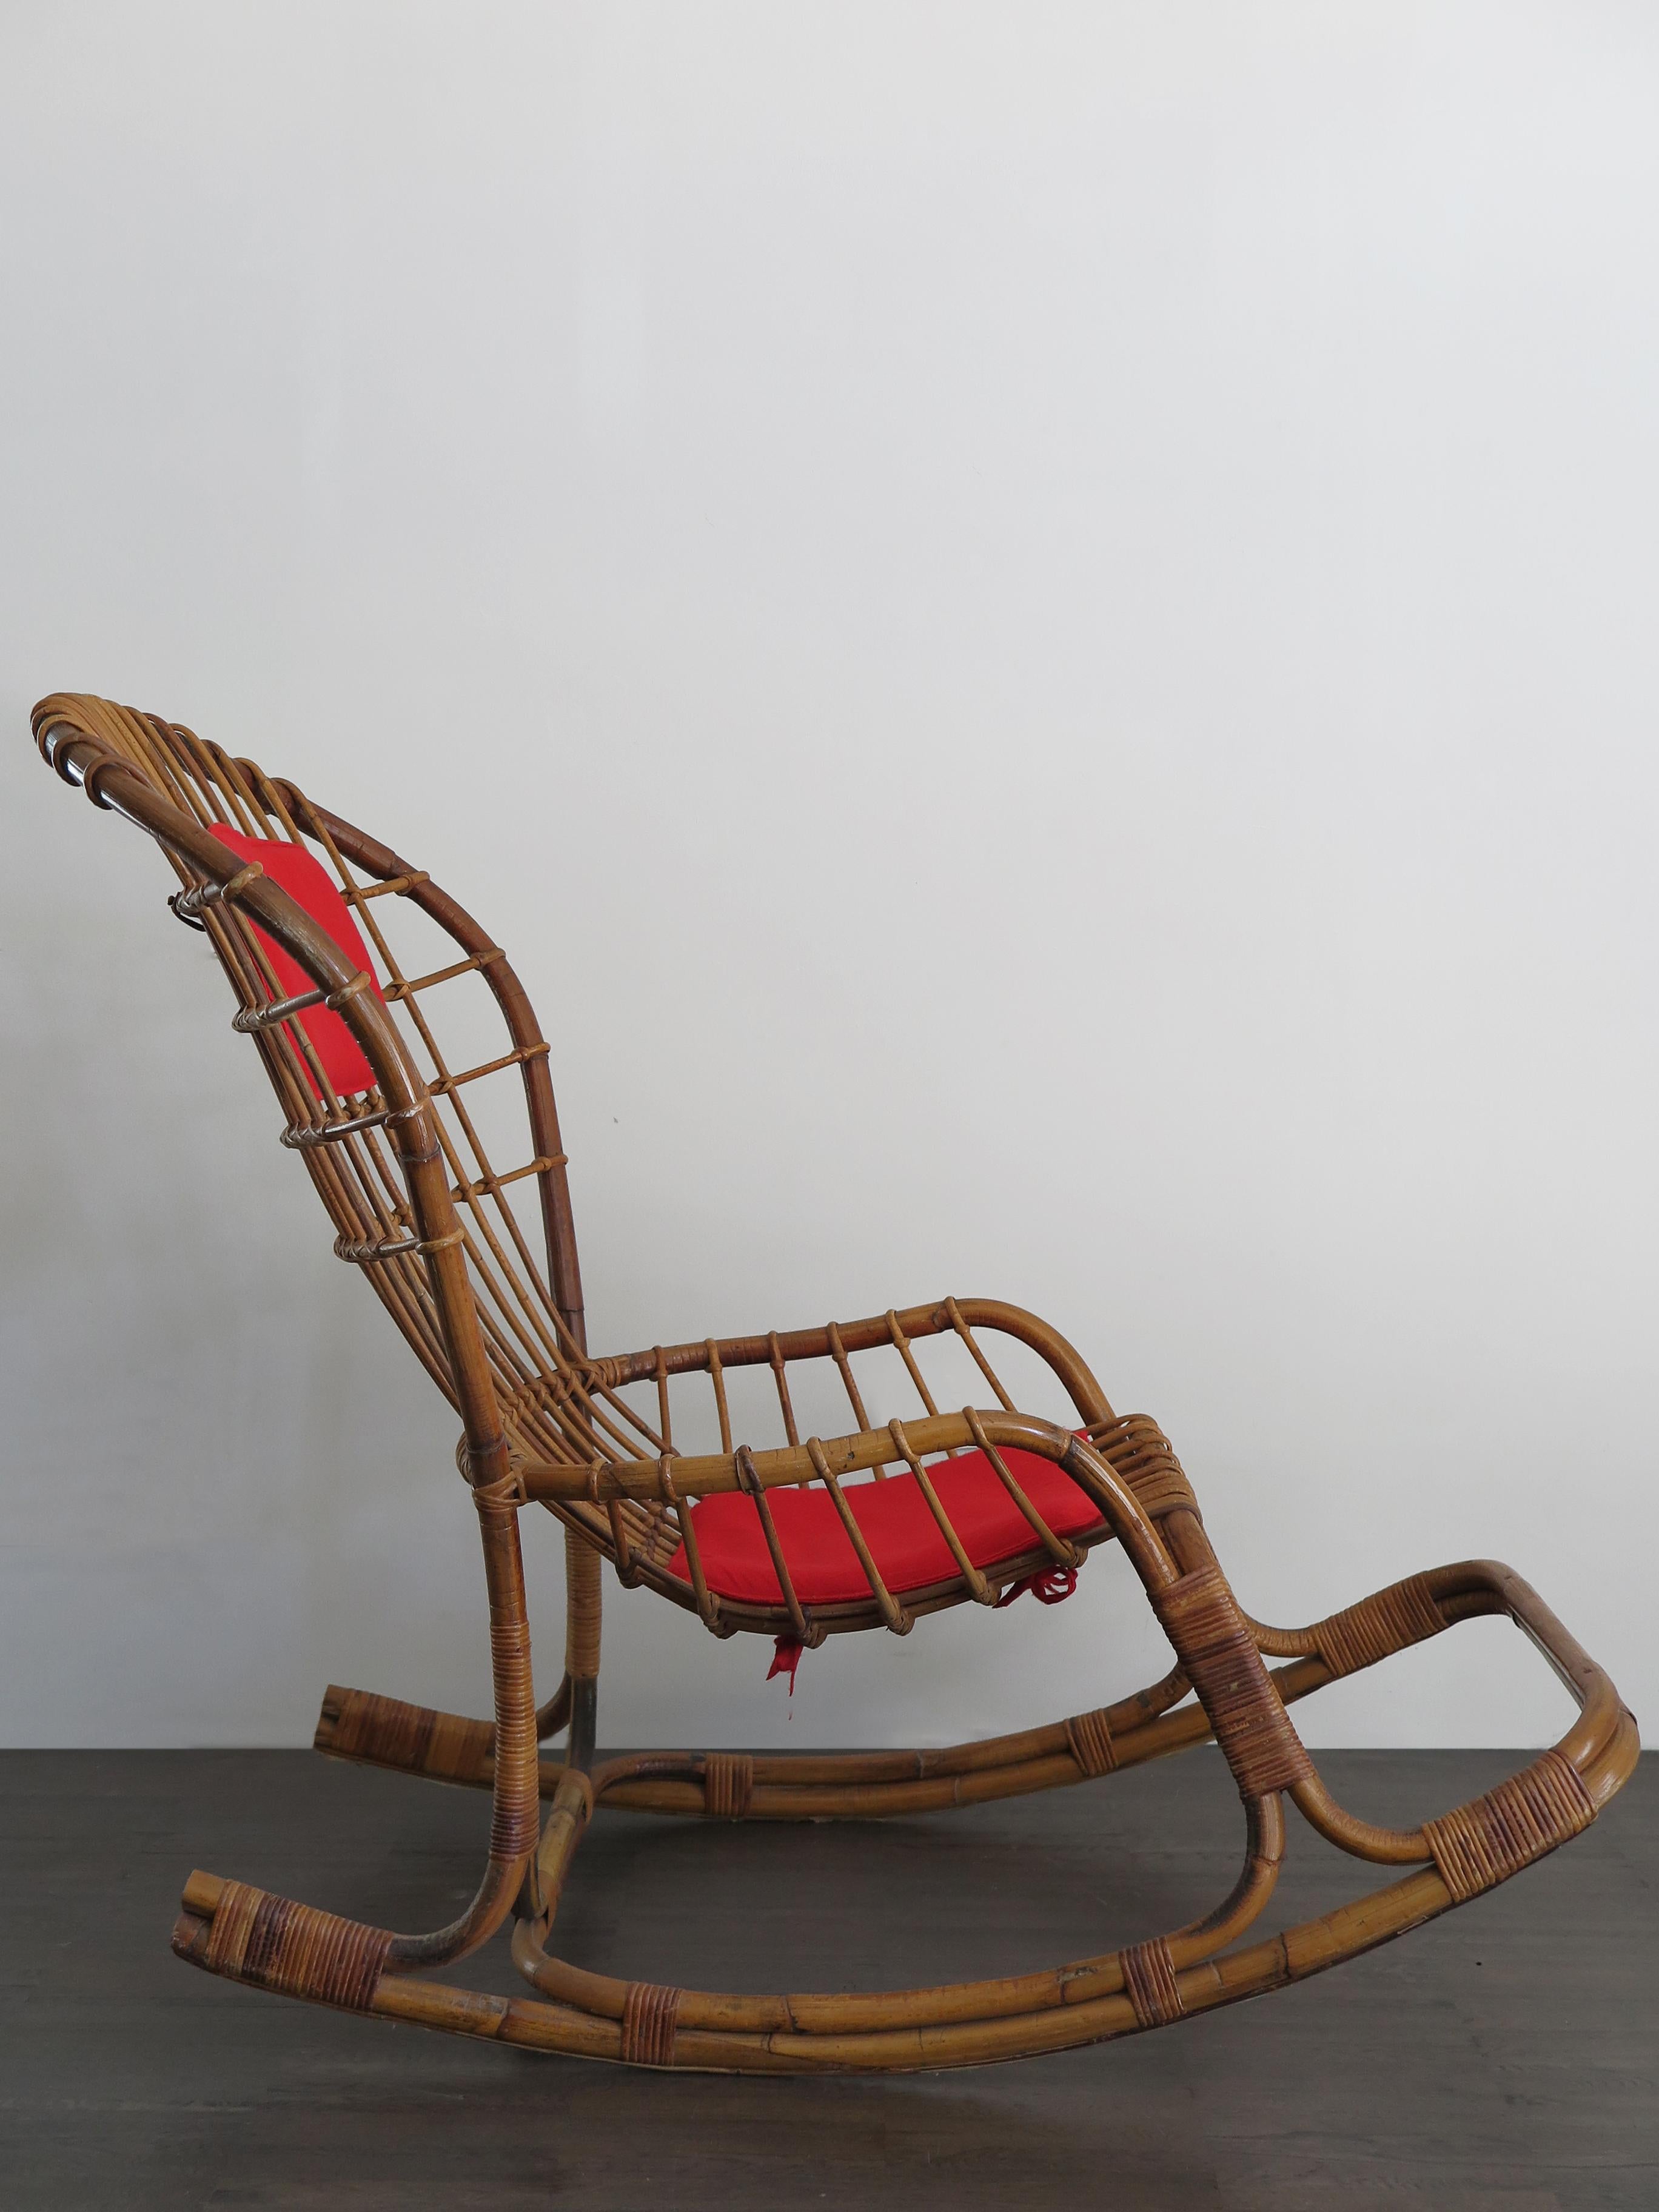 Chaise à bascule italienne de style moderne du milieu du siècle, modèle 'BP 12', conçue par Haruki Miyagima et fabriquée par Pierantonio Bonacina, avec structure en rotin, jonc et coussins rembourrés en tissu, années 1960.
La littérature